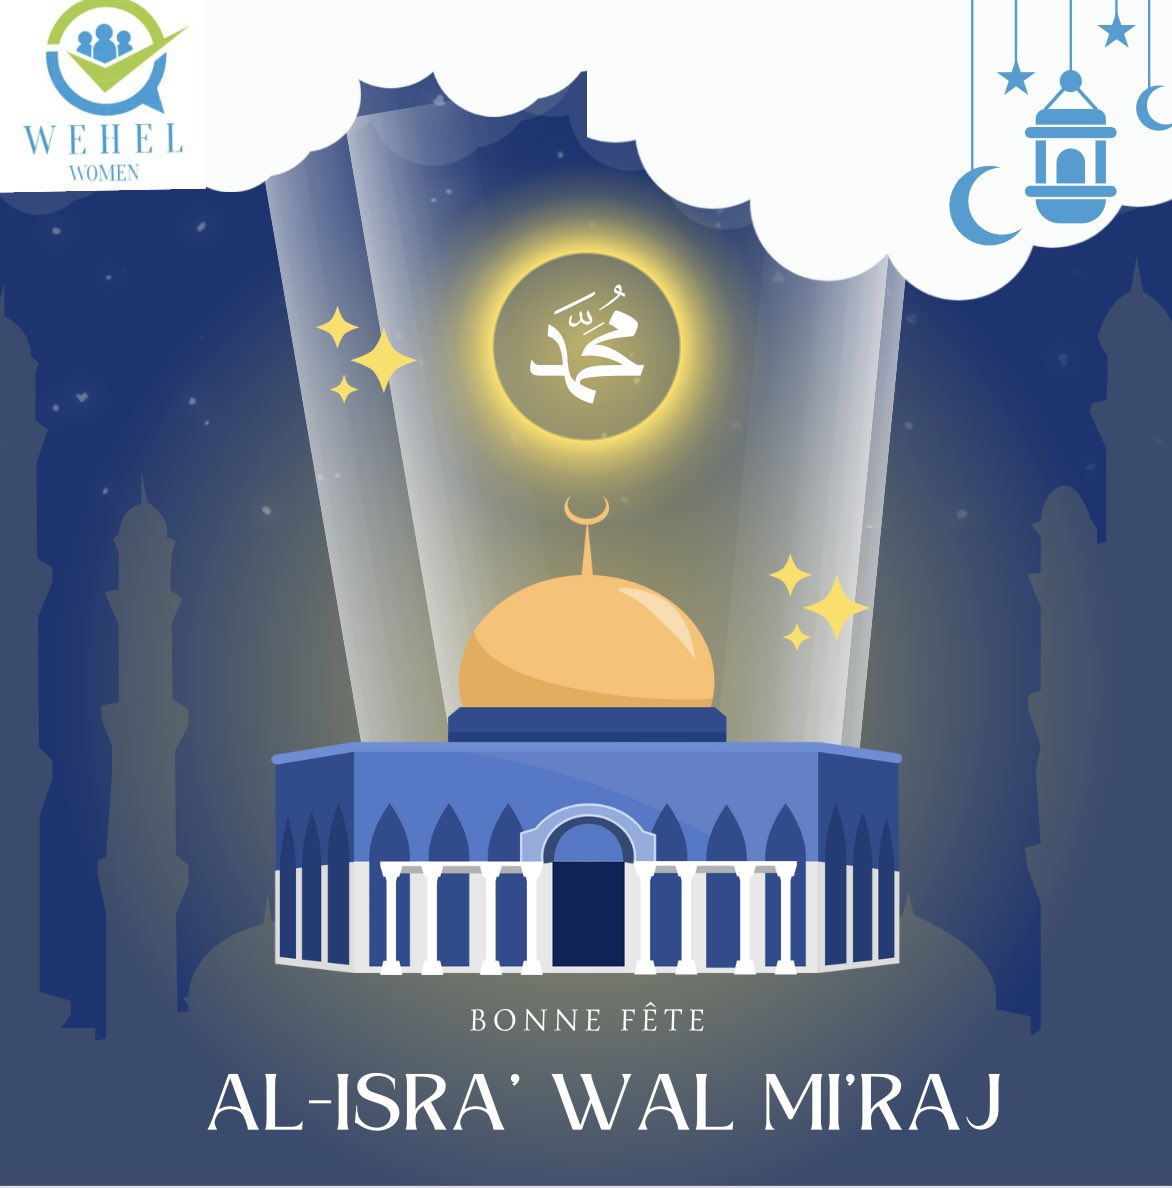 Bonne fête d’Isra Wal Miraj à tous.